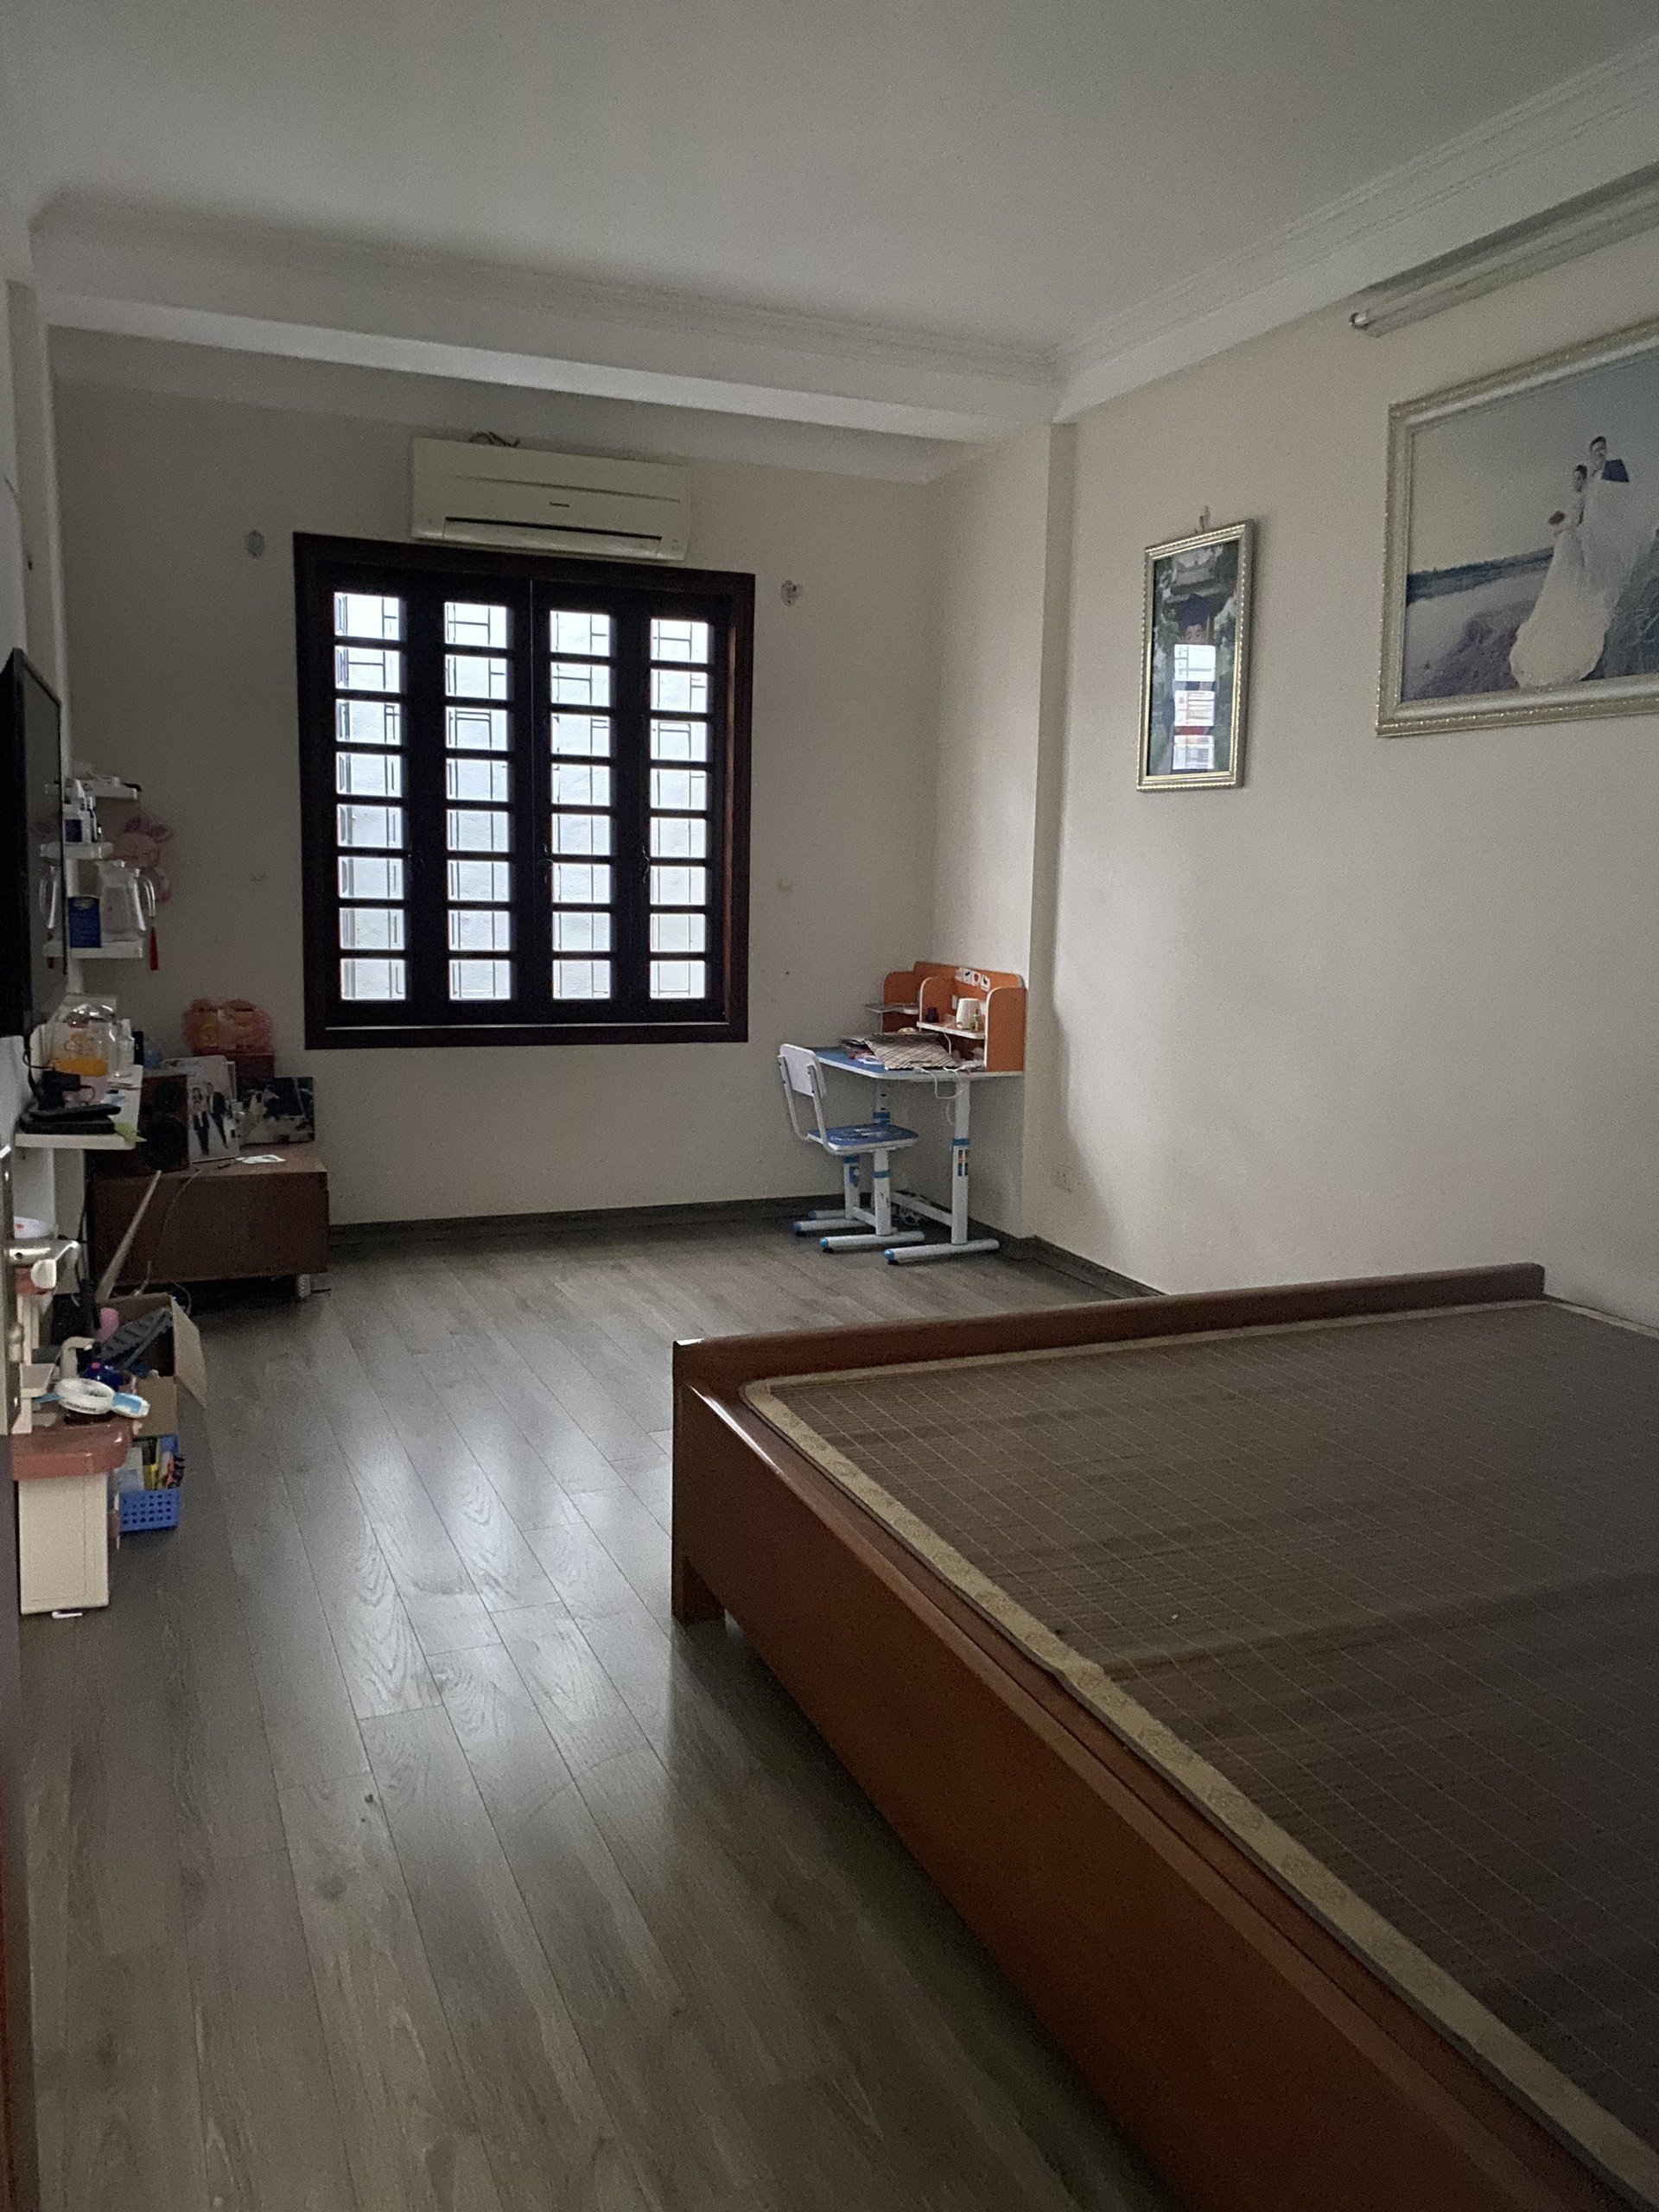 Văn Khoa cho thuê nhà phố Nguyễn Cao, Lò Đúc đủ nội thất, 3 điều hòa, 3 nóng lạnh. Ở, làm VP online 4